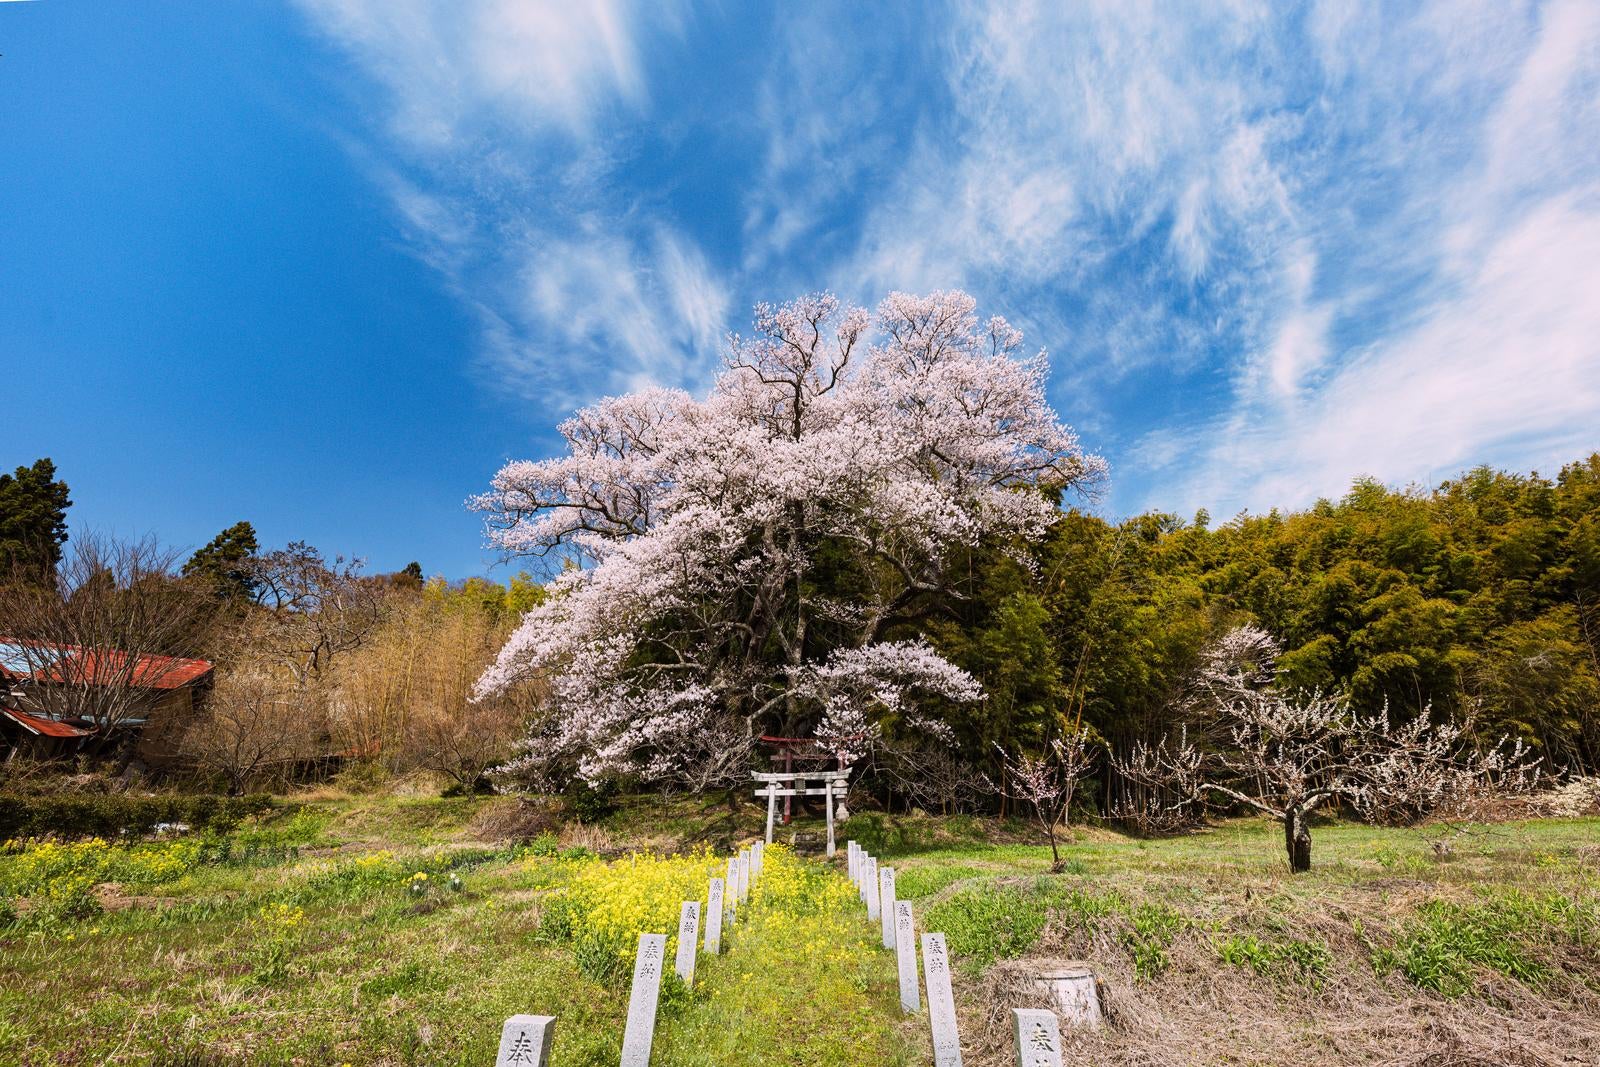 「満開に咲き誇る子授け櫻の景観」の写真